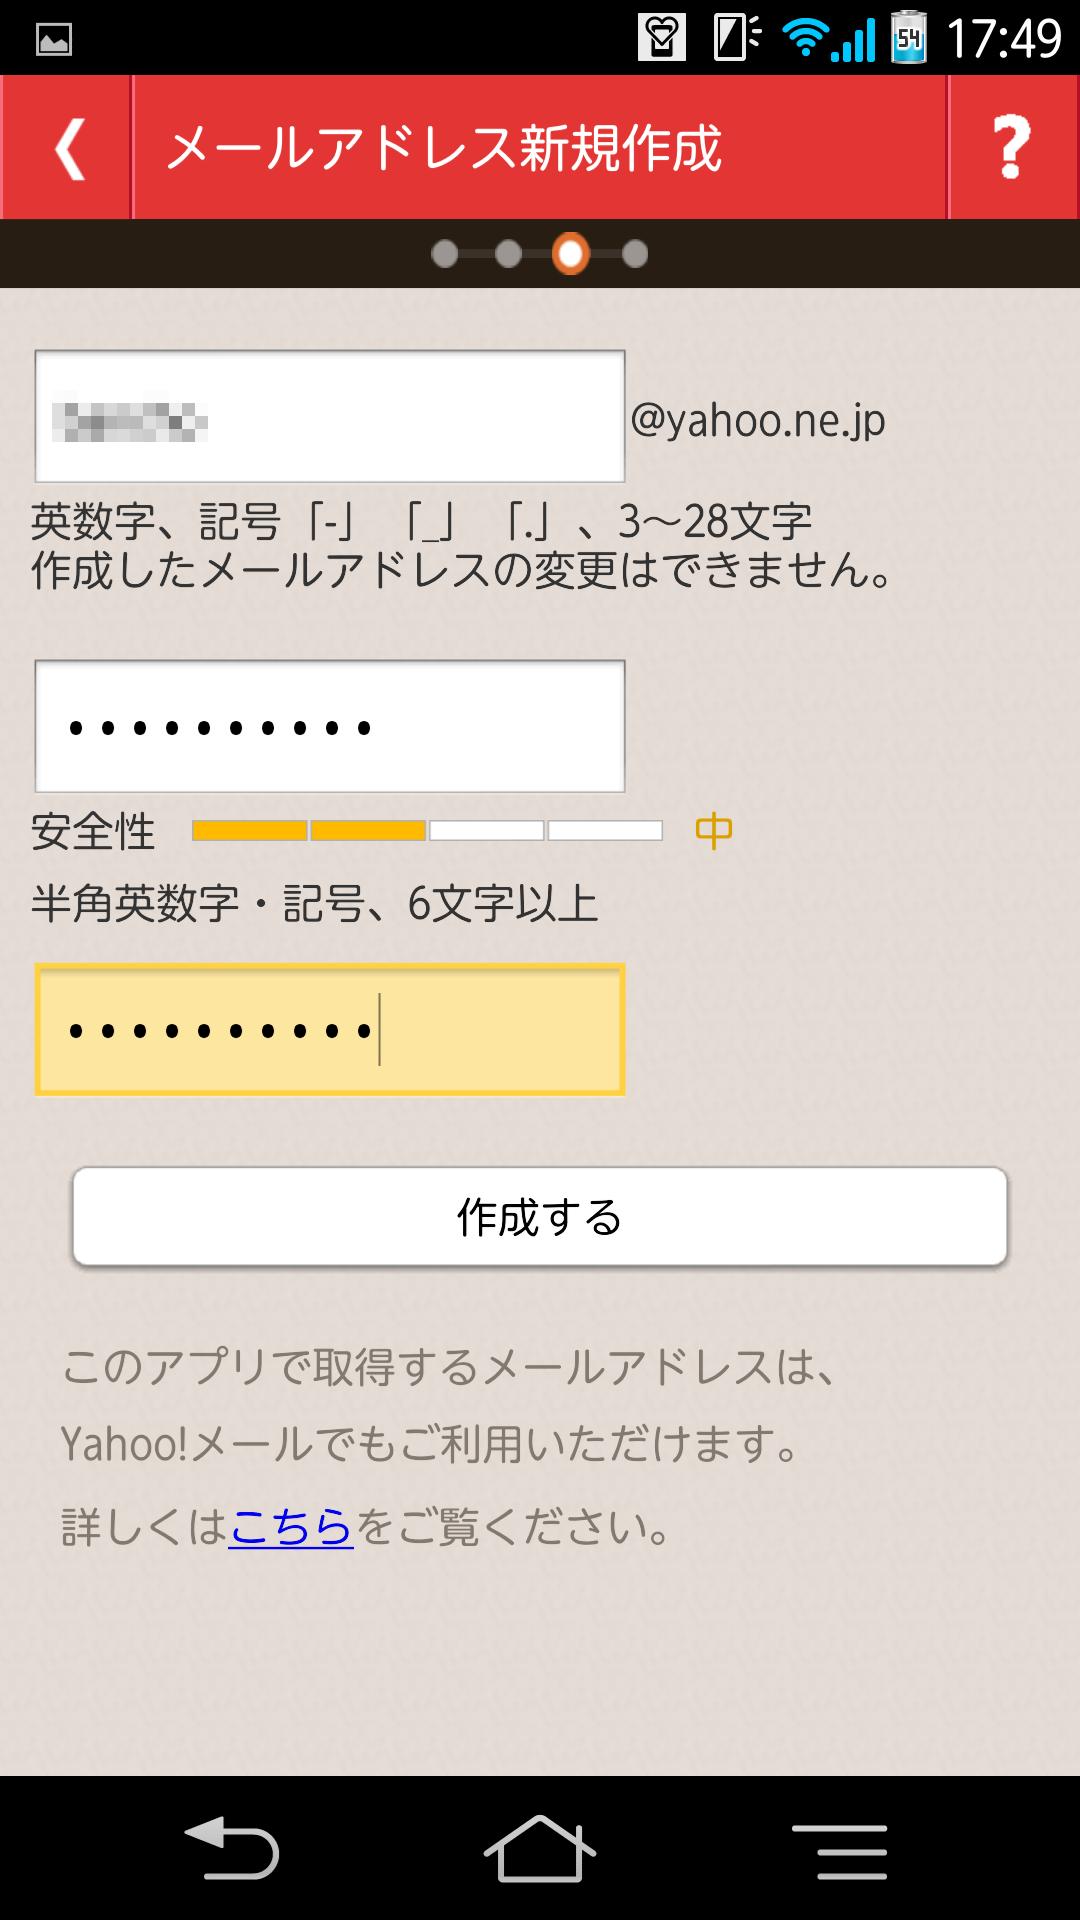 Yahoo!コミュニケーションメール